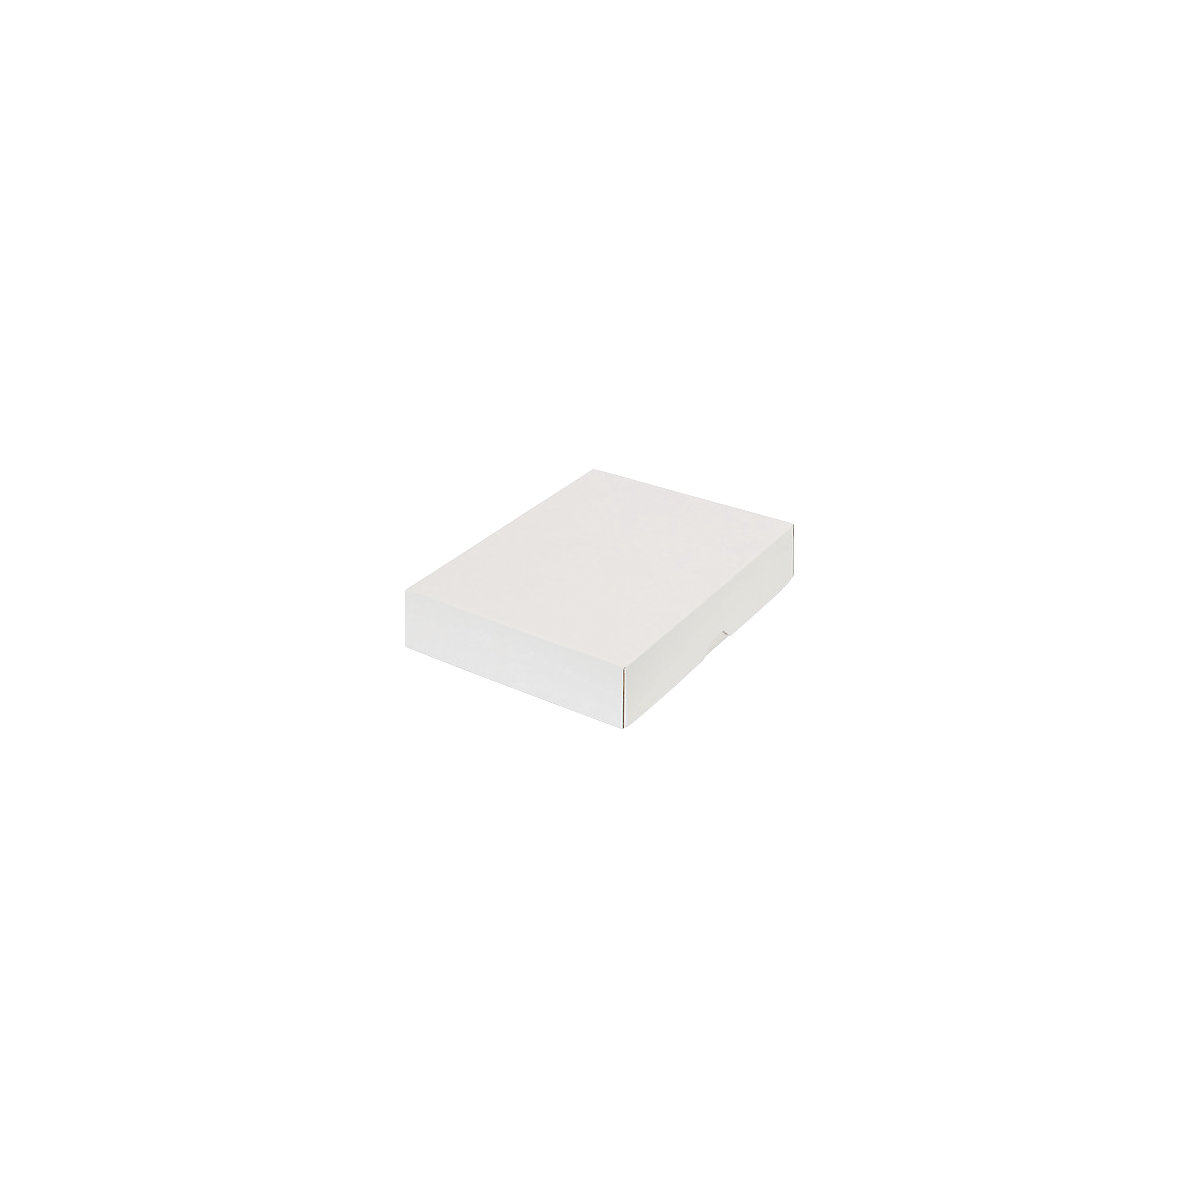 Stülpdeckelkarton, zweiteilig, Innenmaße 252 x 180 x 45 mm, B5, weiß, ab 30 Stk-43